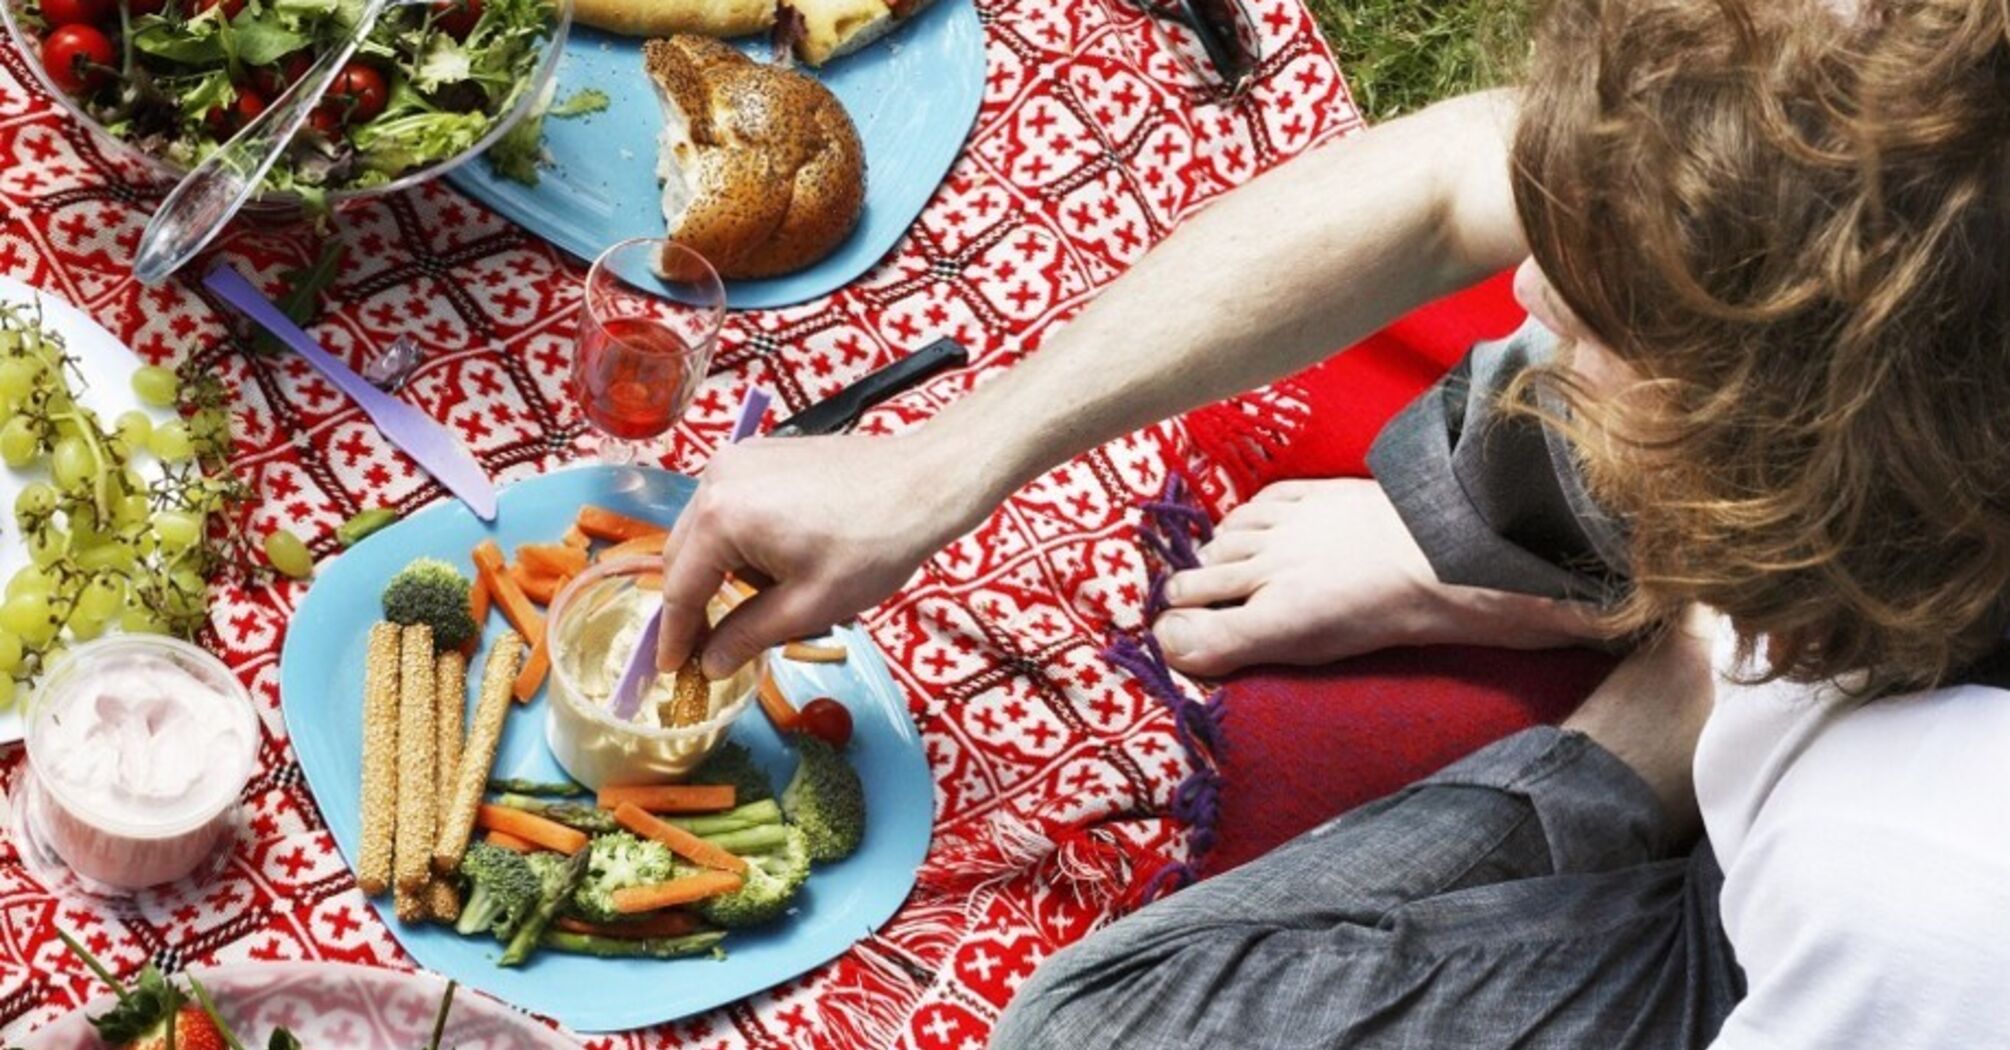 Що взяти з собою на пікнік, щоб було смачно, здорово і безпечно